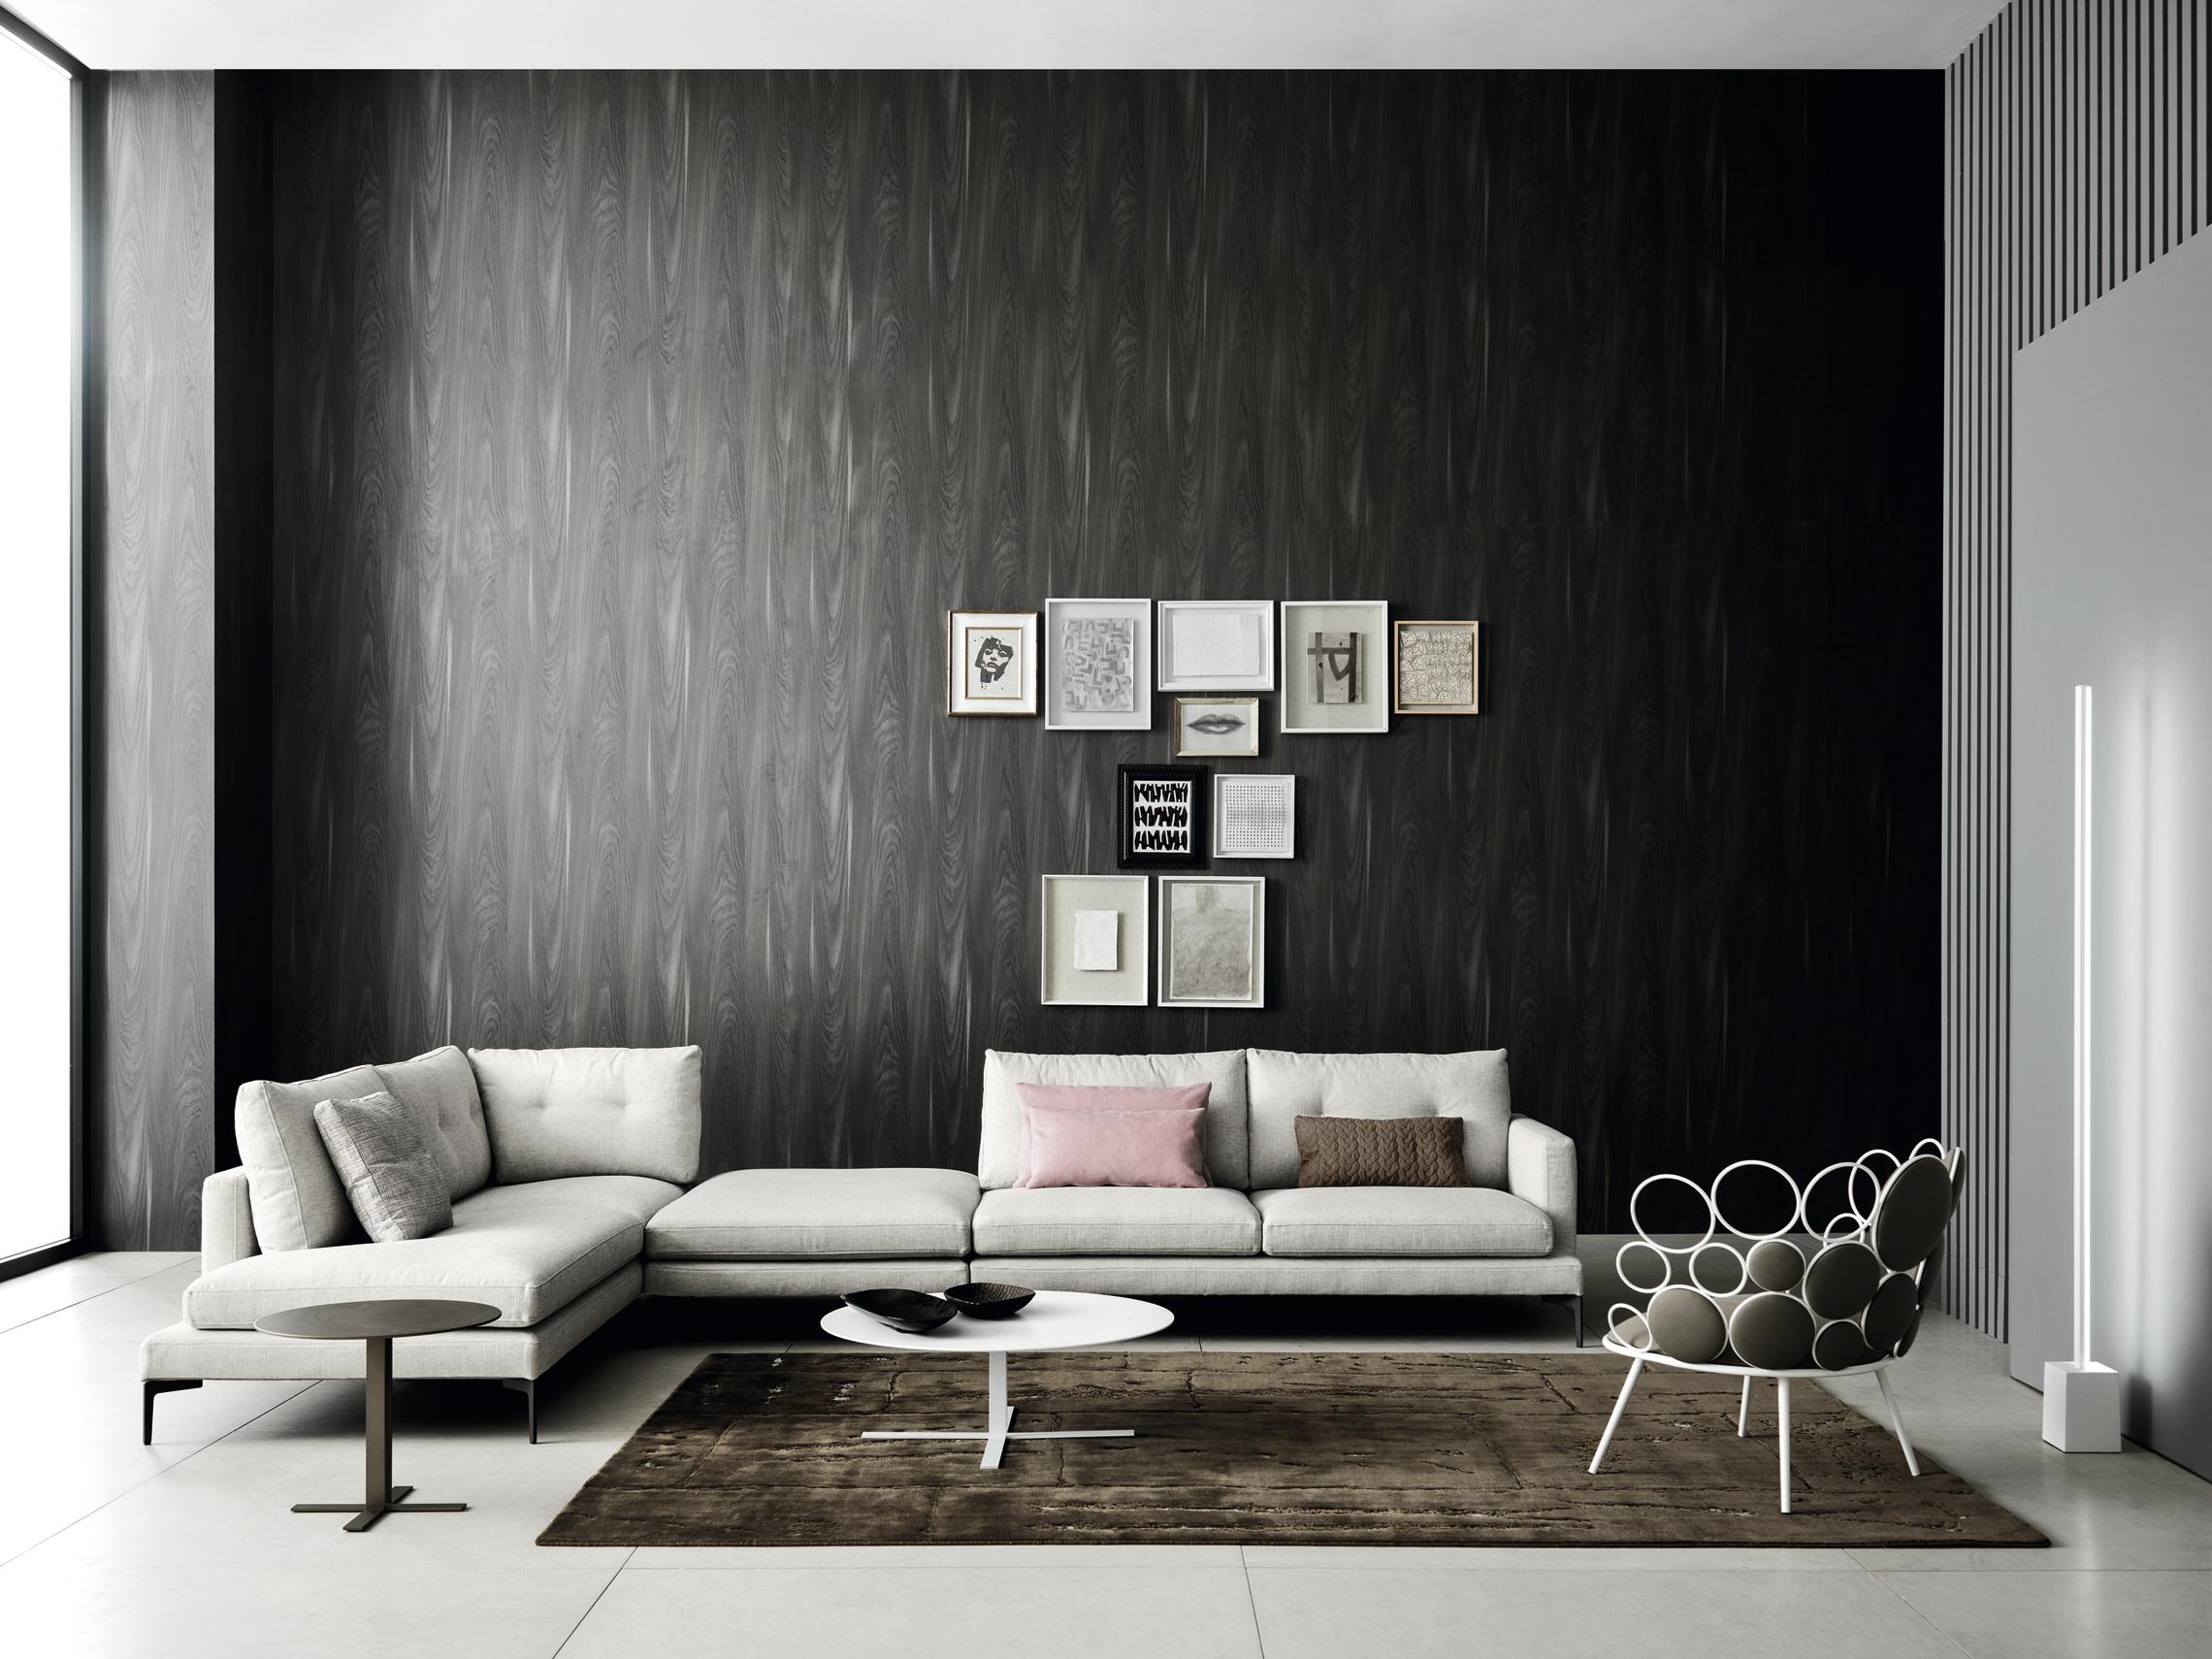 Das Sofa Essentiel präsentiert sich mit einem klaren Ziel. Ein Design ohne Übermaß und mit freundlicher Ergonomie, das eine Mischung aus italienischer Eleganz und nordischen Zügen darstellt und harmonische Elemente auf der Raum-Zeit-Landkarte des